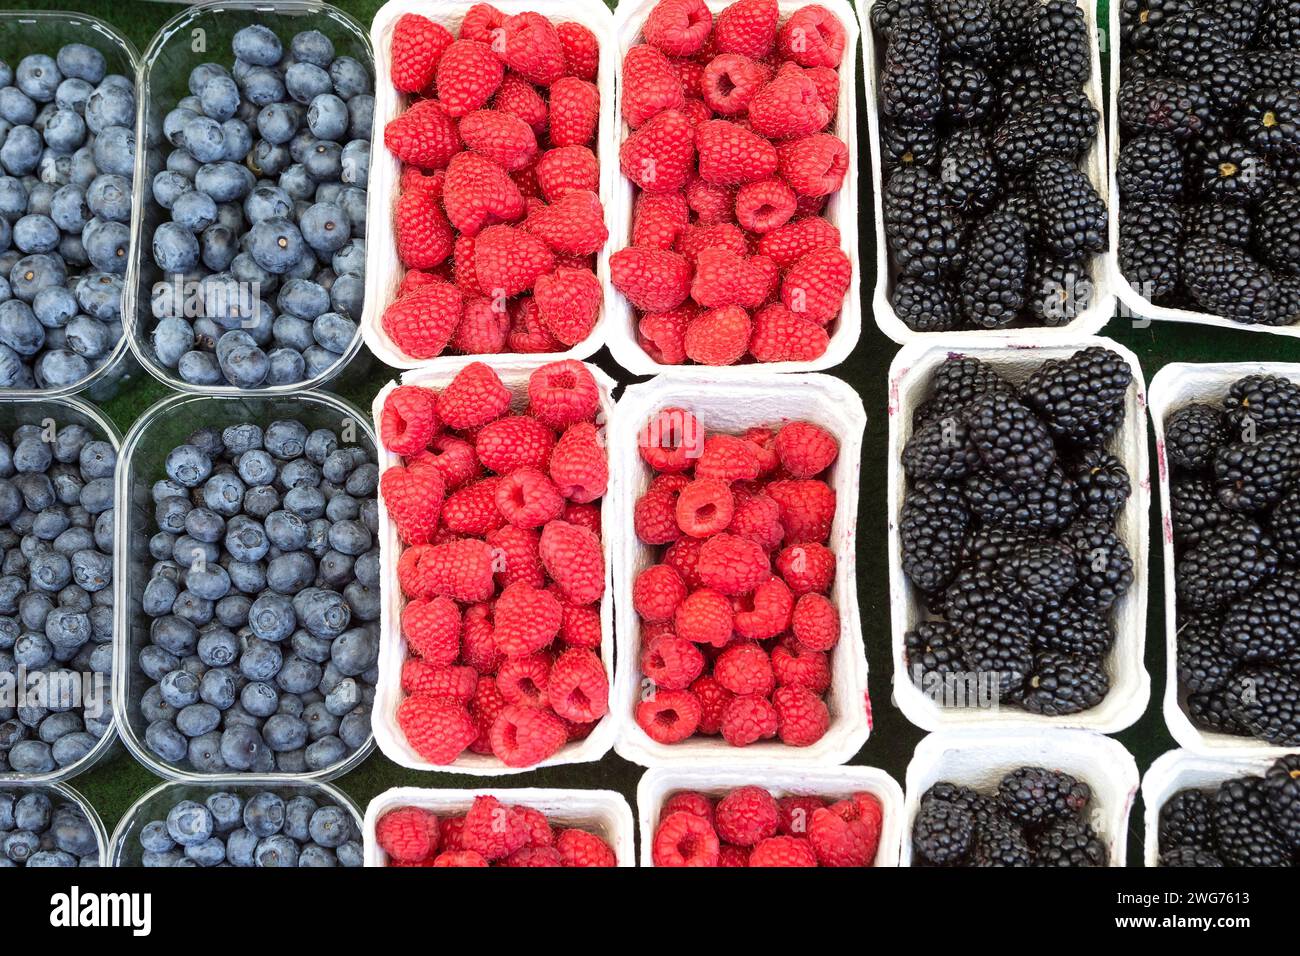 Naschmarkt, Berries, Blueberries, Raspberries And Blackberries Stock Photo